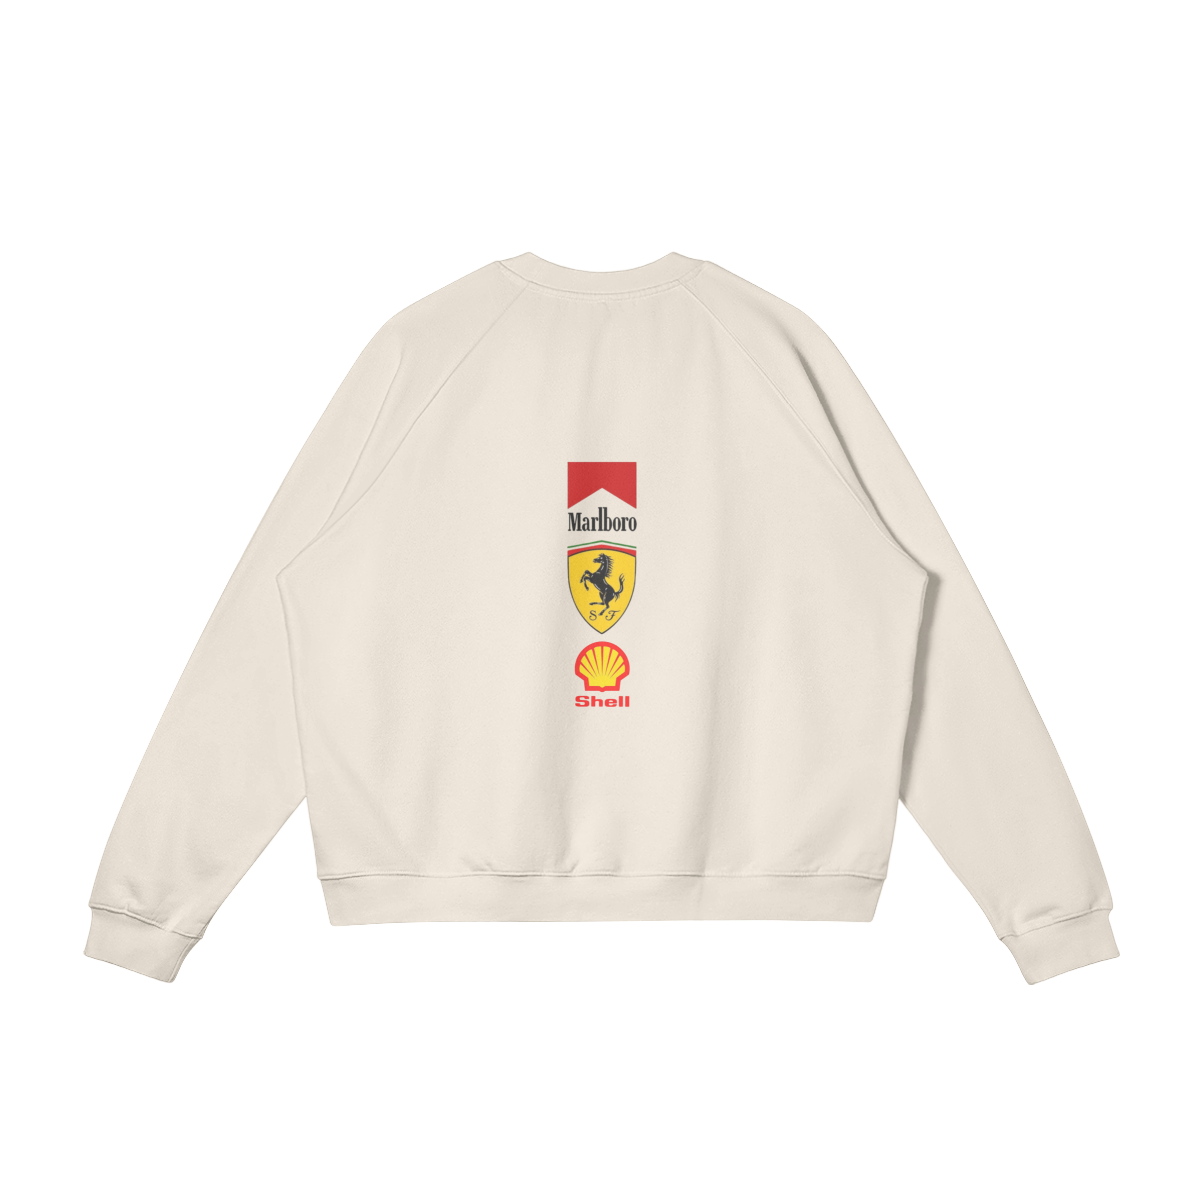 Old Style Fleece-Lined Sweatshirt